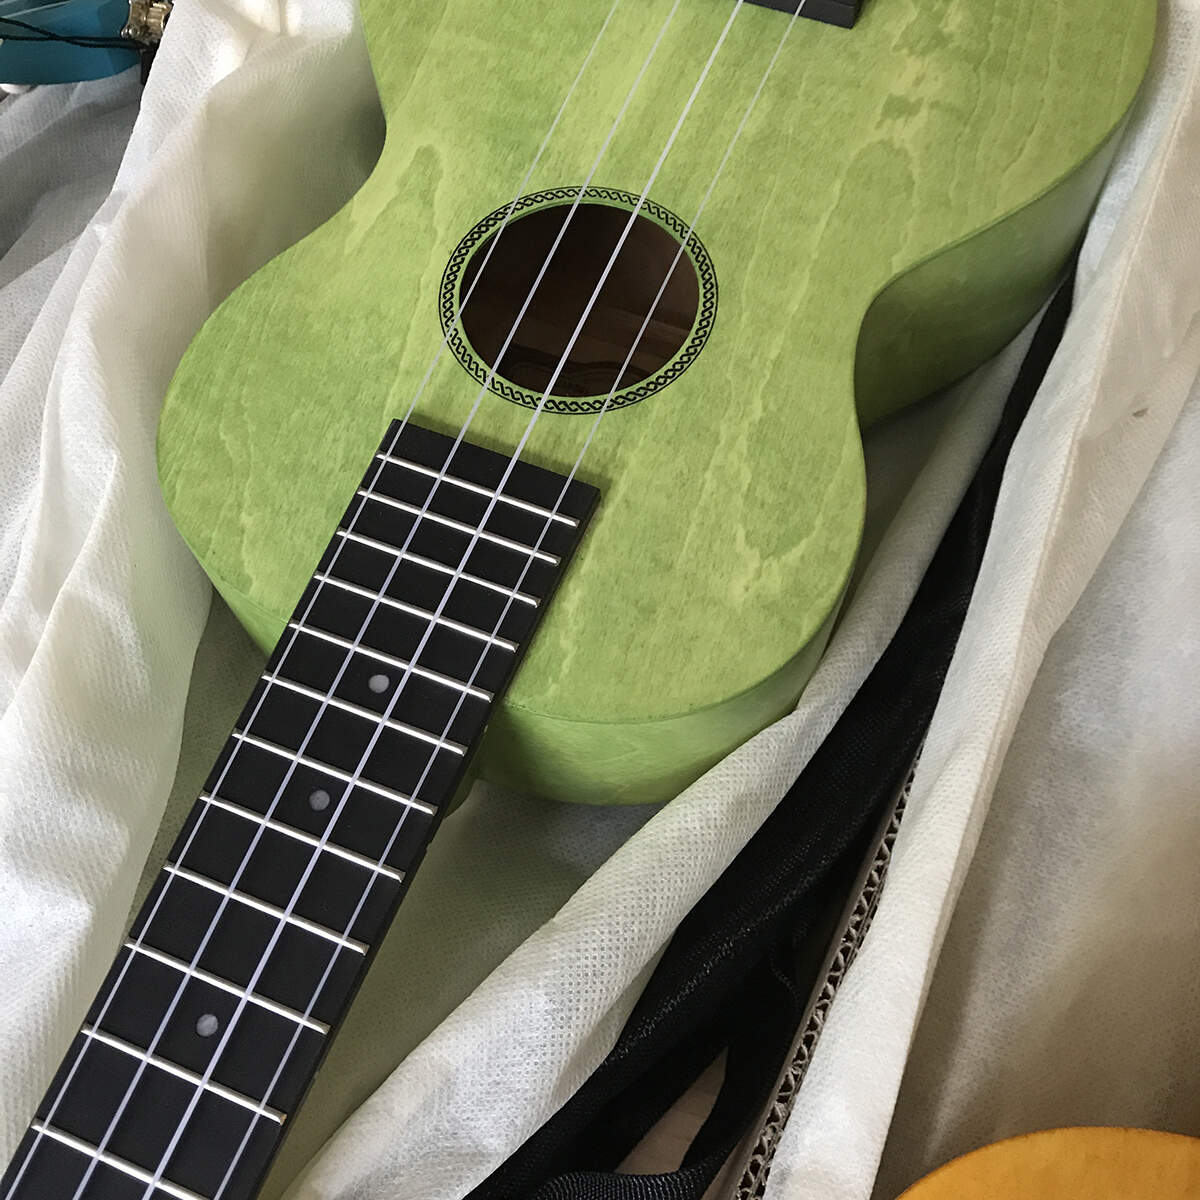 Mahalo beginners ukulele